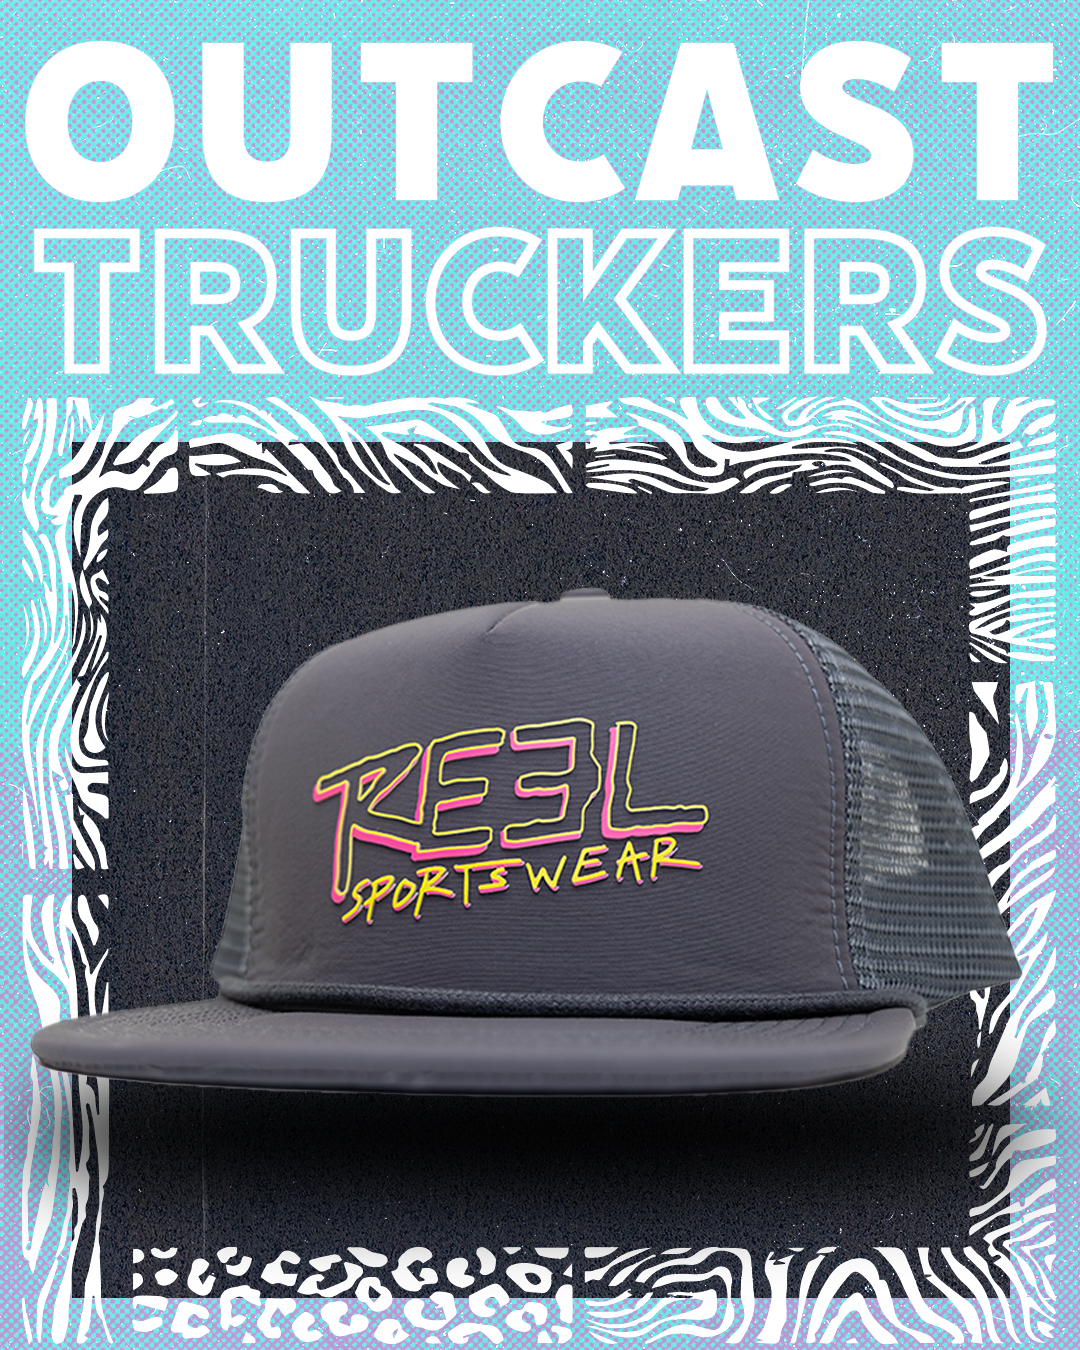 Reel Sportswear outcast Trucker Caps